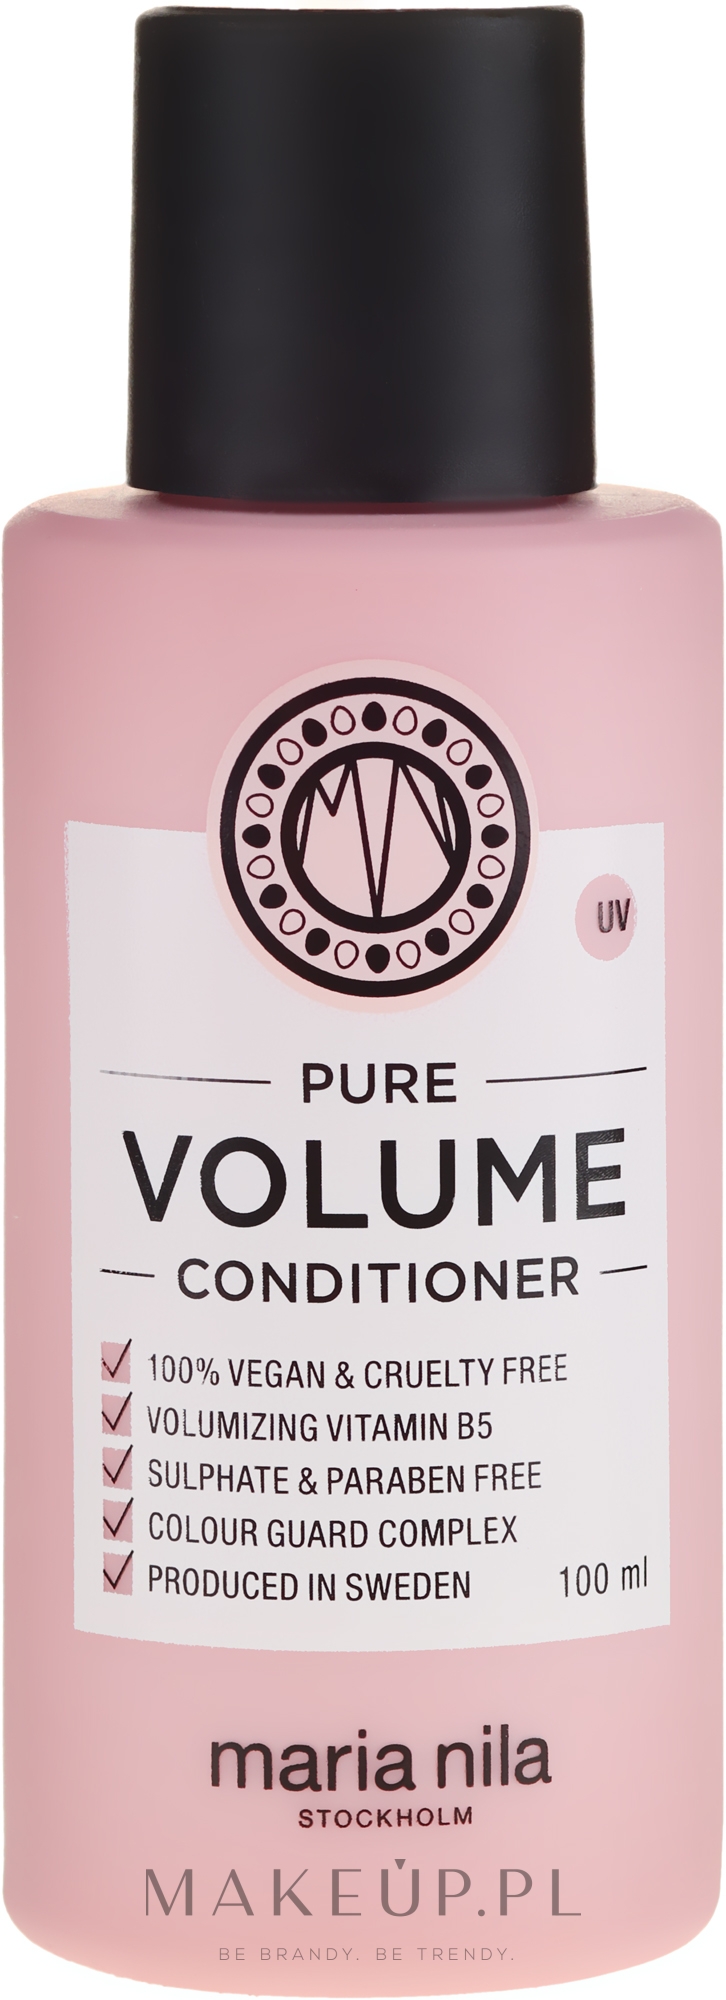 Nawilżająca odżywka dodająca włosom objętości - Maria Nila Pure Volume Conditioner — Zdjęcie 100 ml